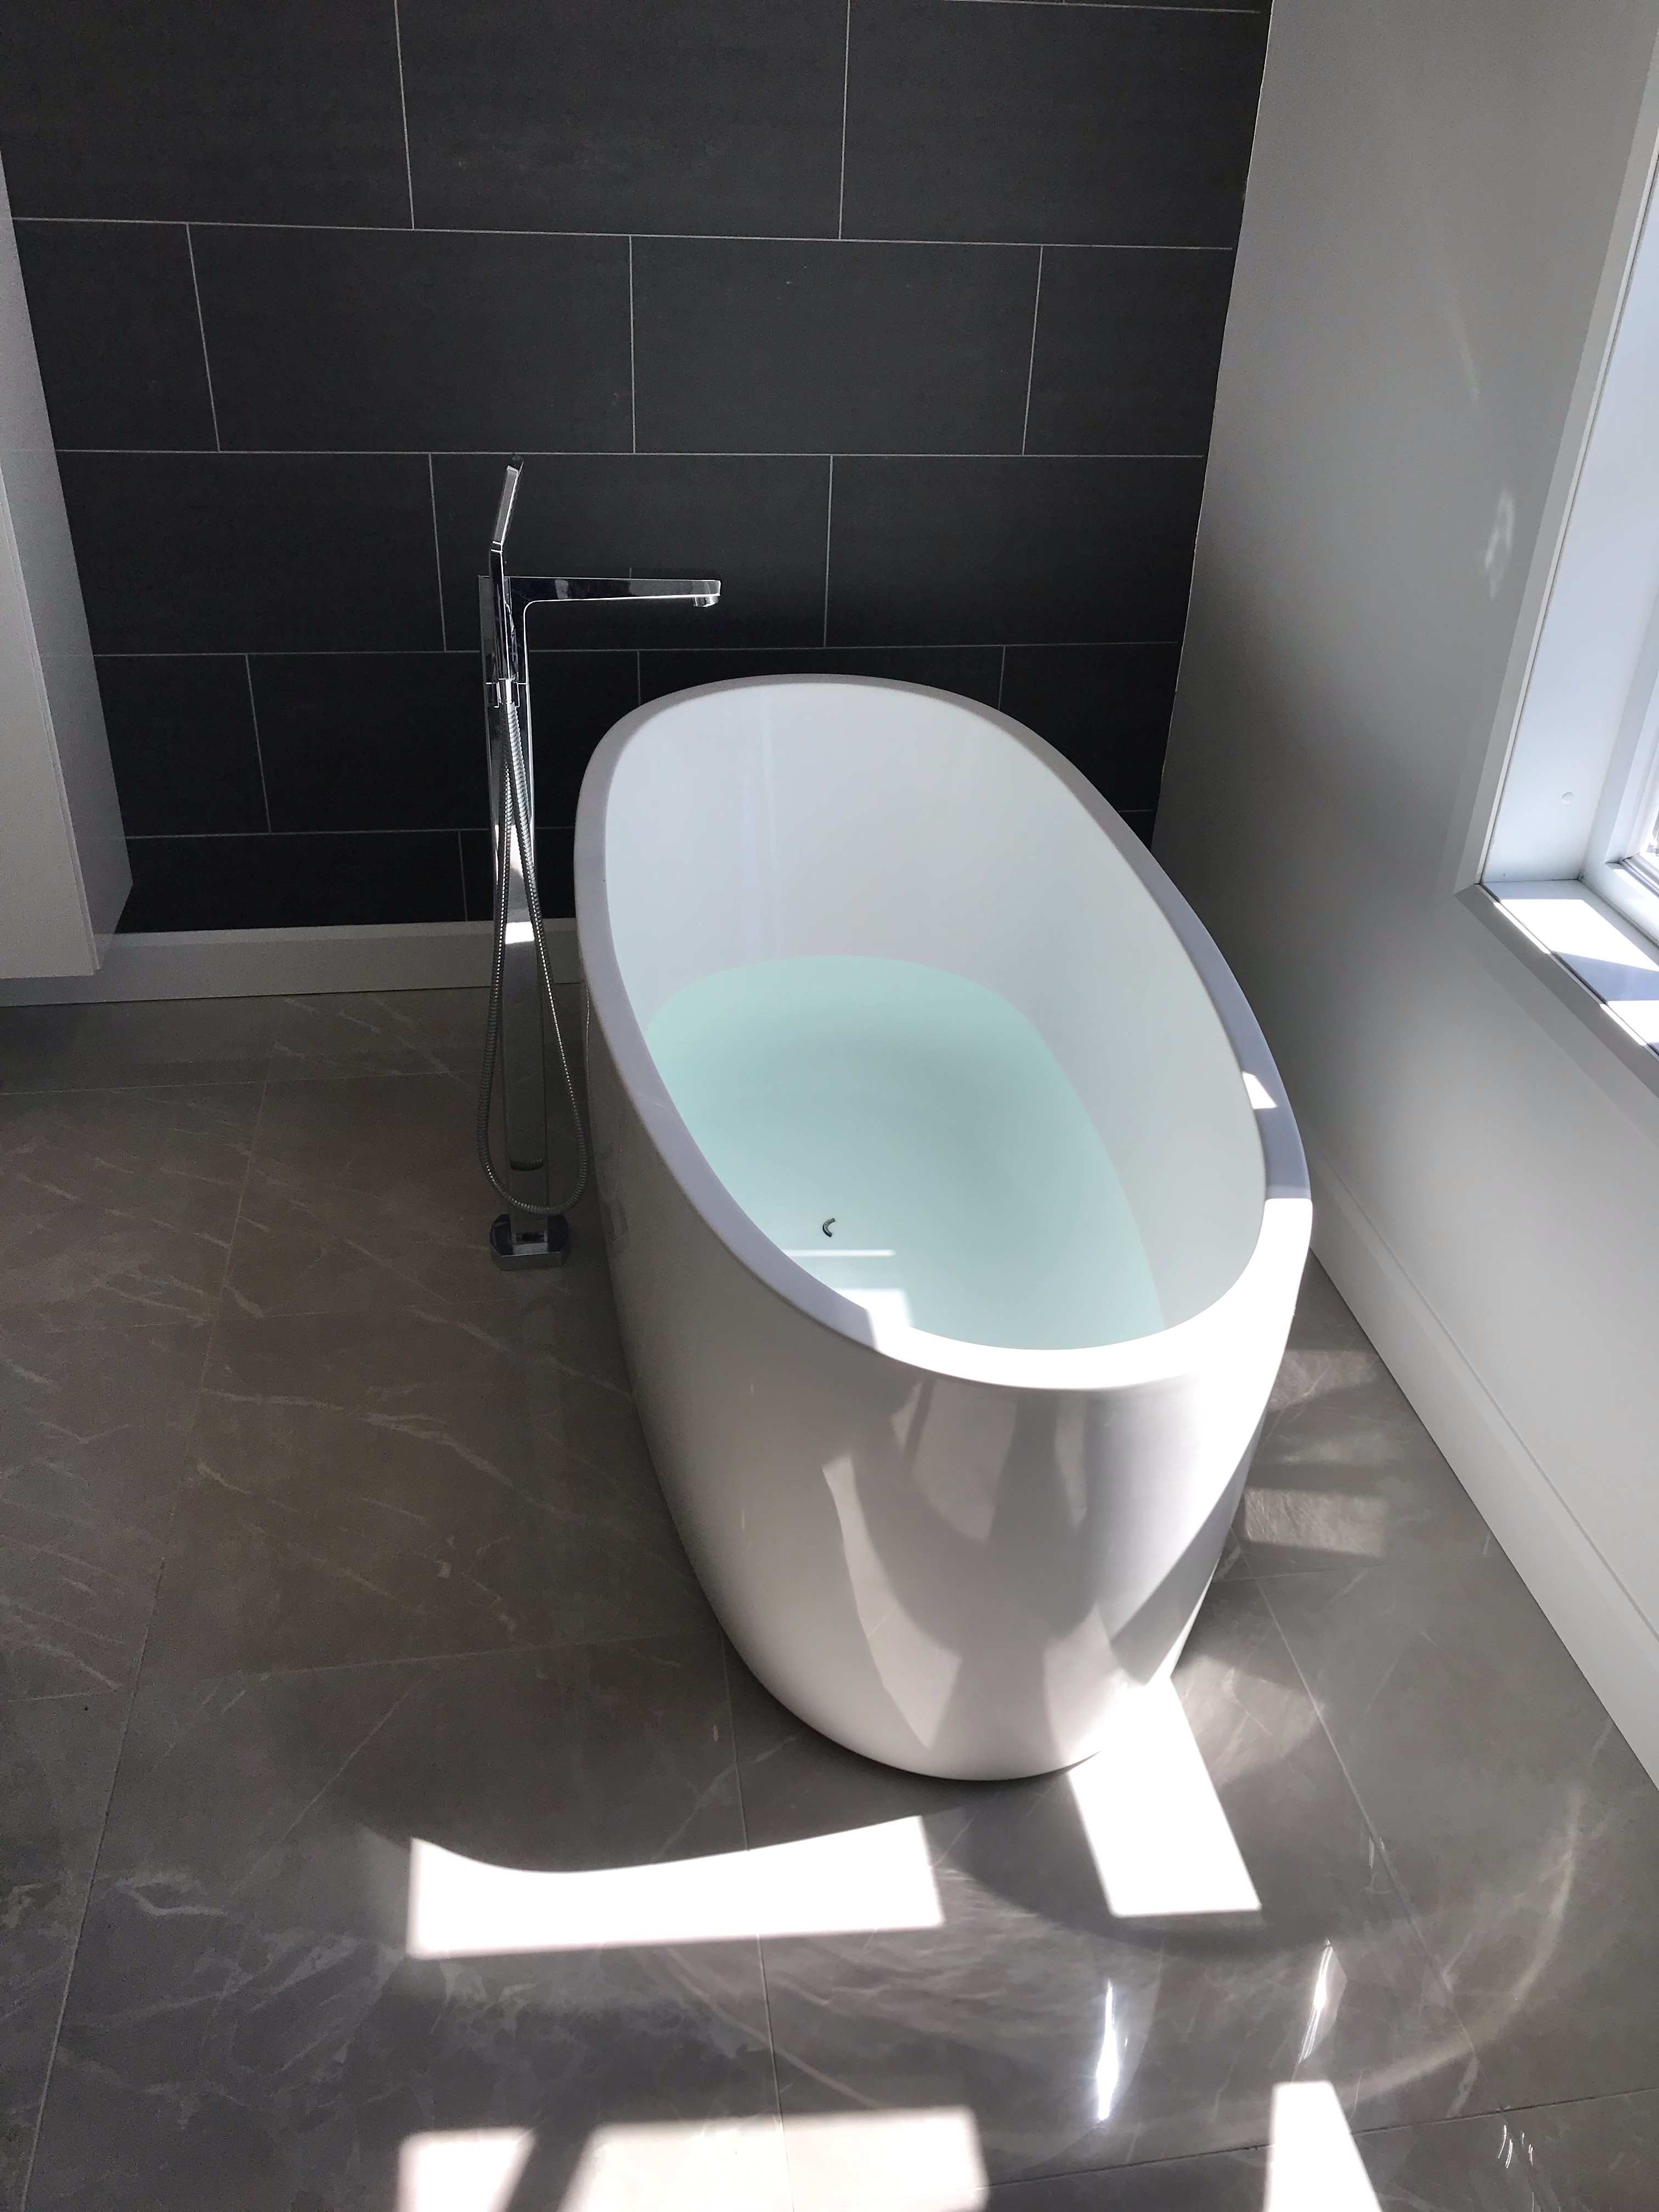 Projet de plomberie construction de salle de bain - Les plombiers ont installé la base de douche en acrylique, la porte de verre, le bain autoportant, la toilette et la vanité. Longueuil.